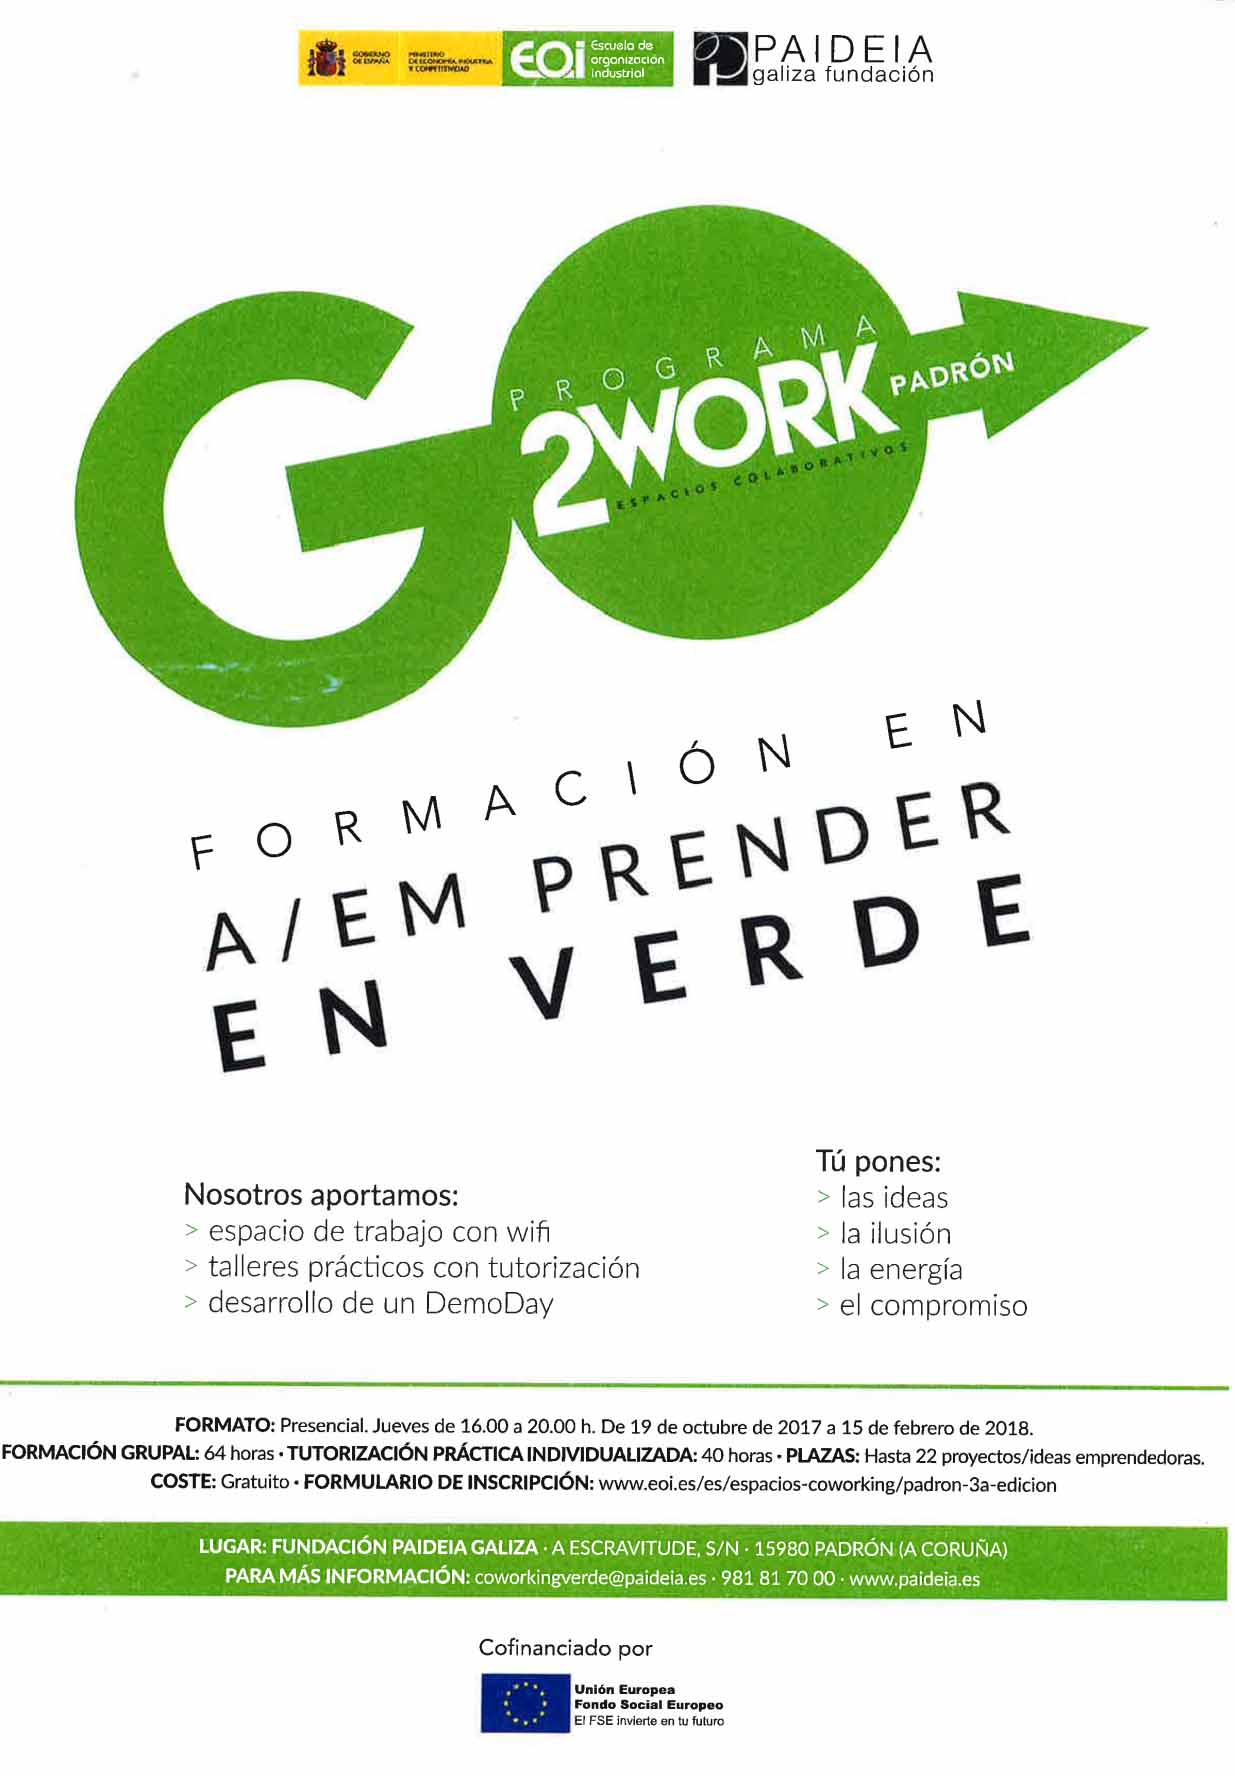 Abierto el plazo de inscripción en el programa “Go 2 Work Emprender en verde”